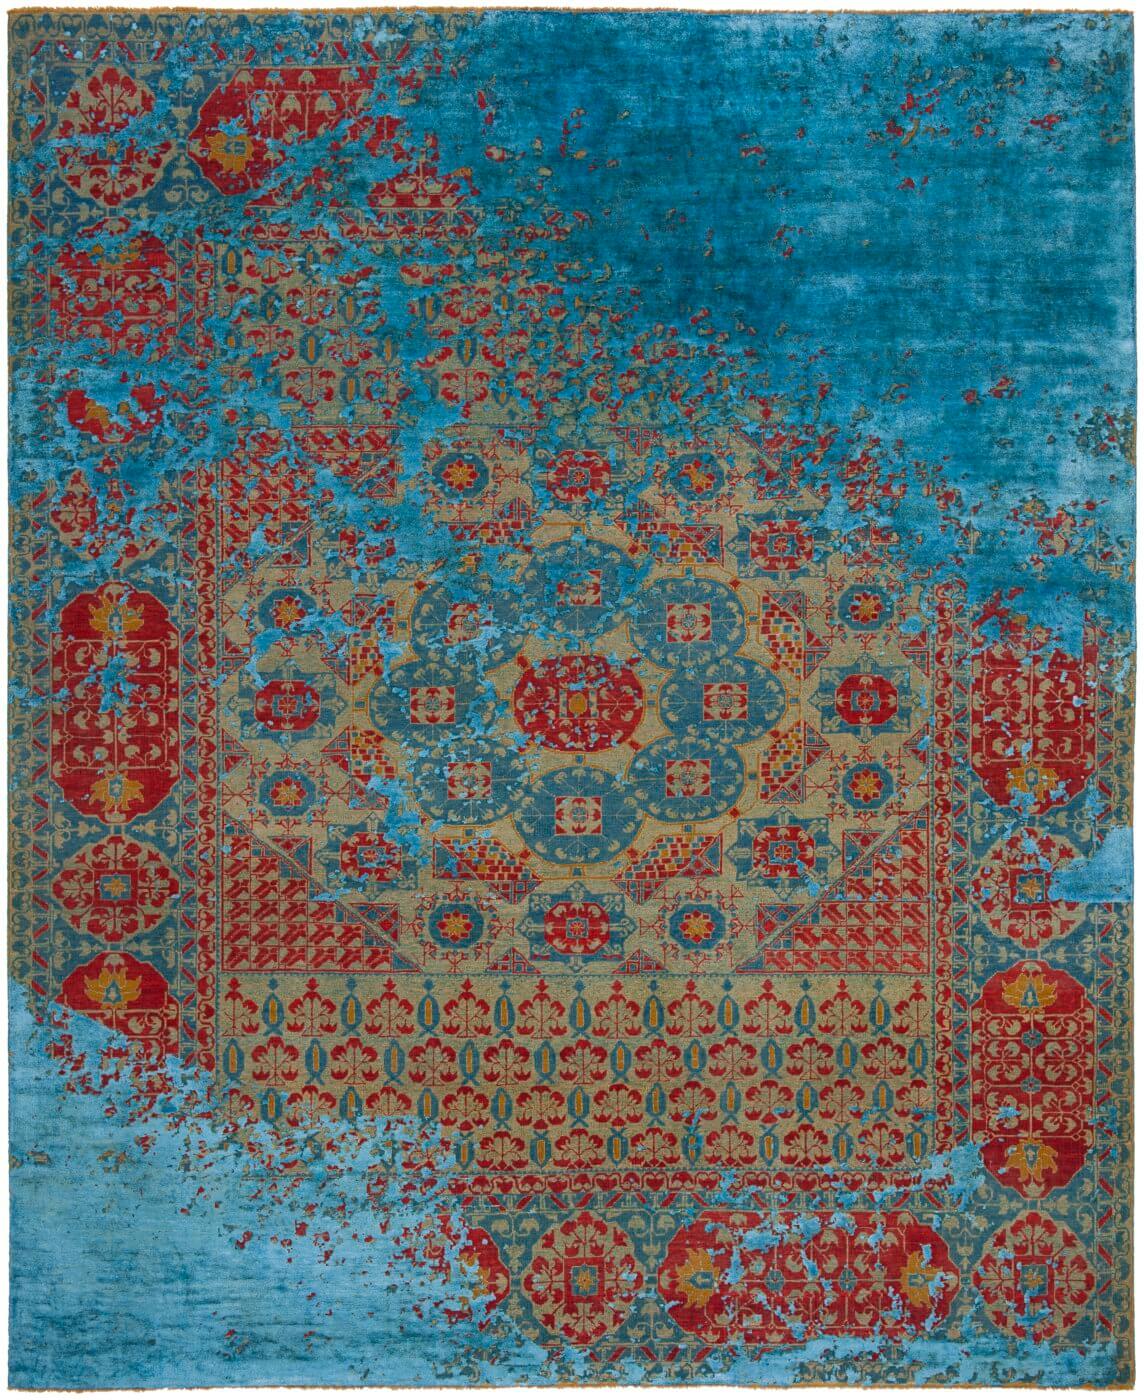 Ковер ручной работы Mamluk Kensington Raved синего цвета от Jan Kath